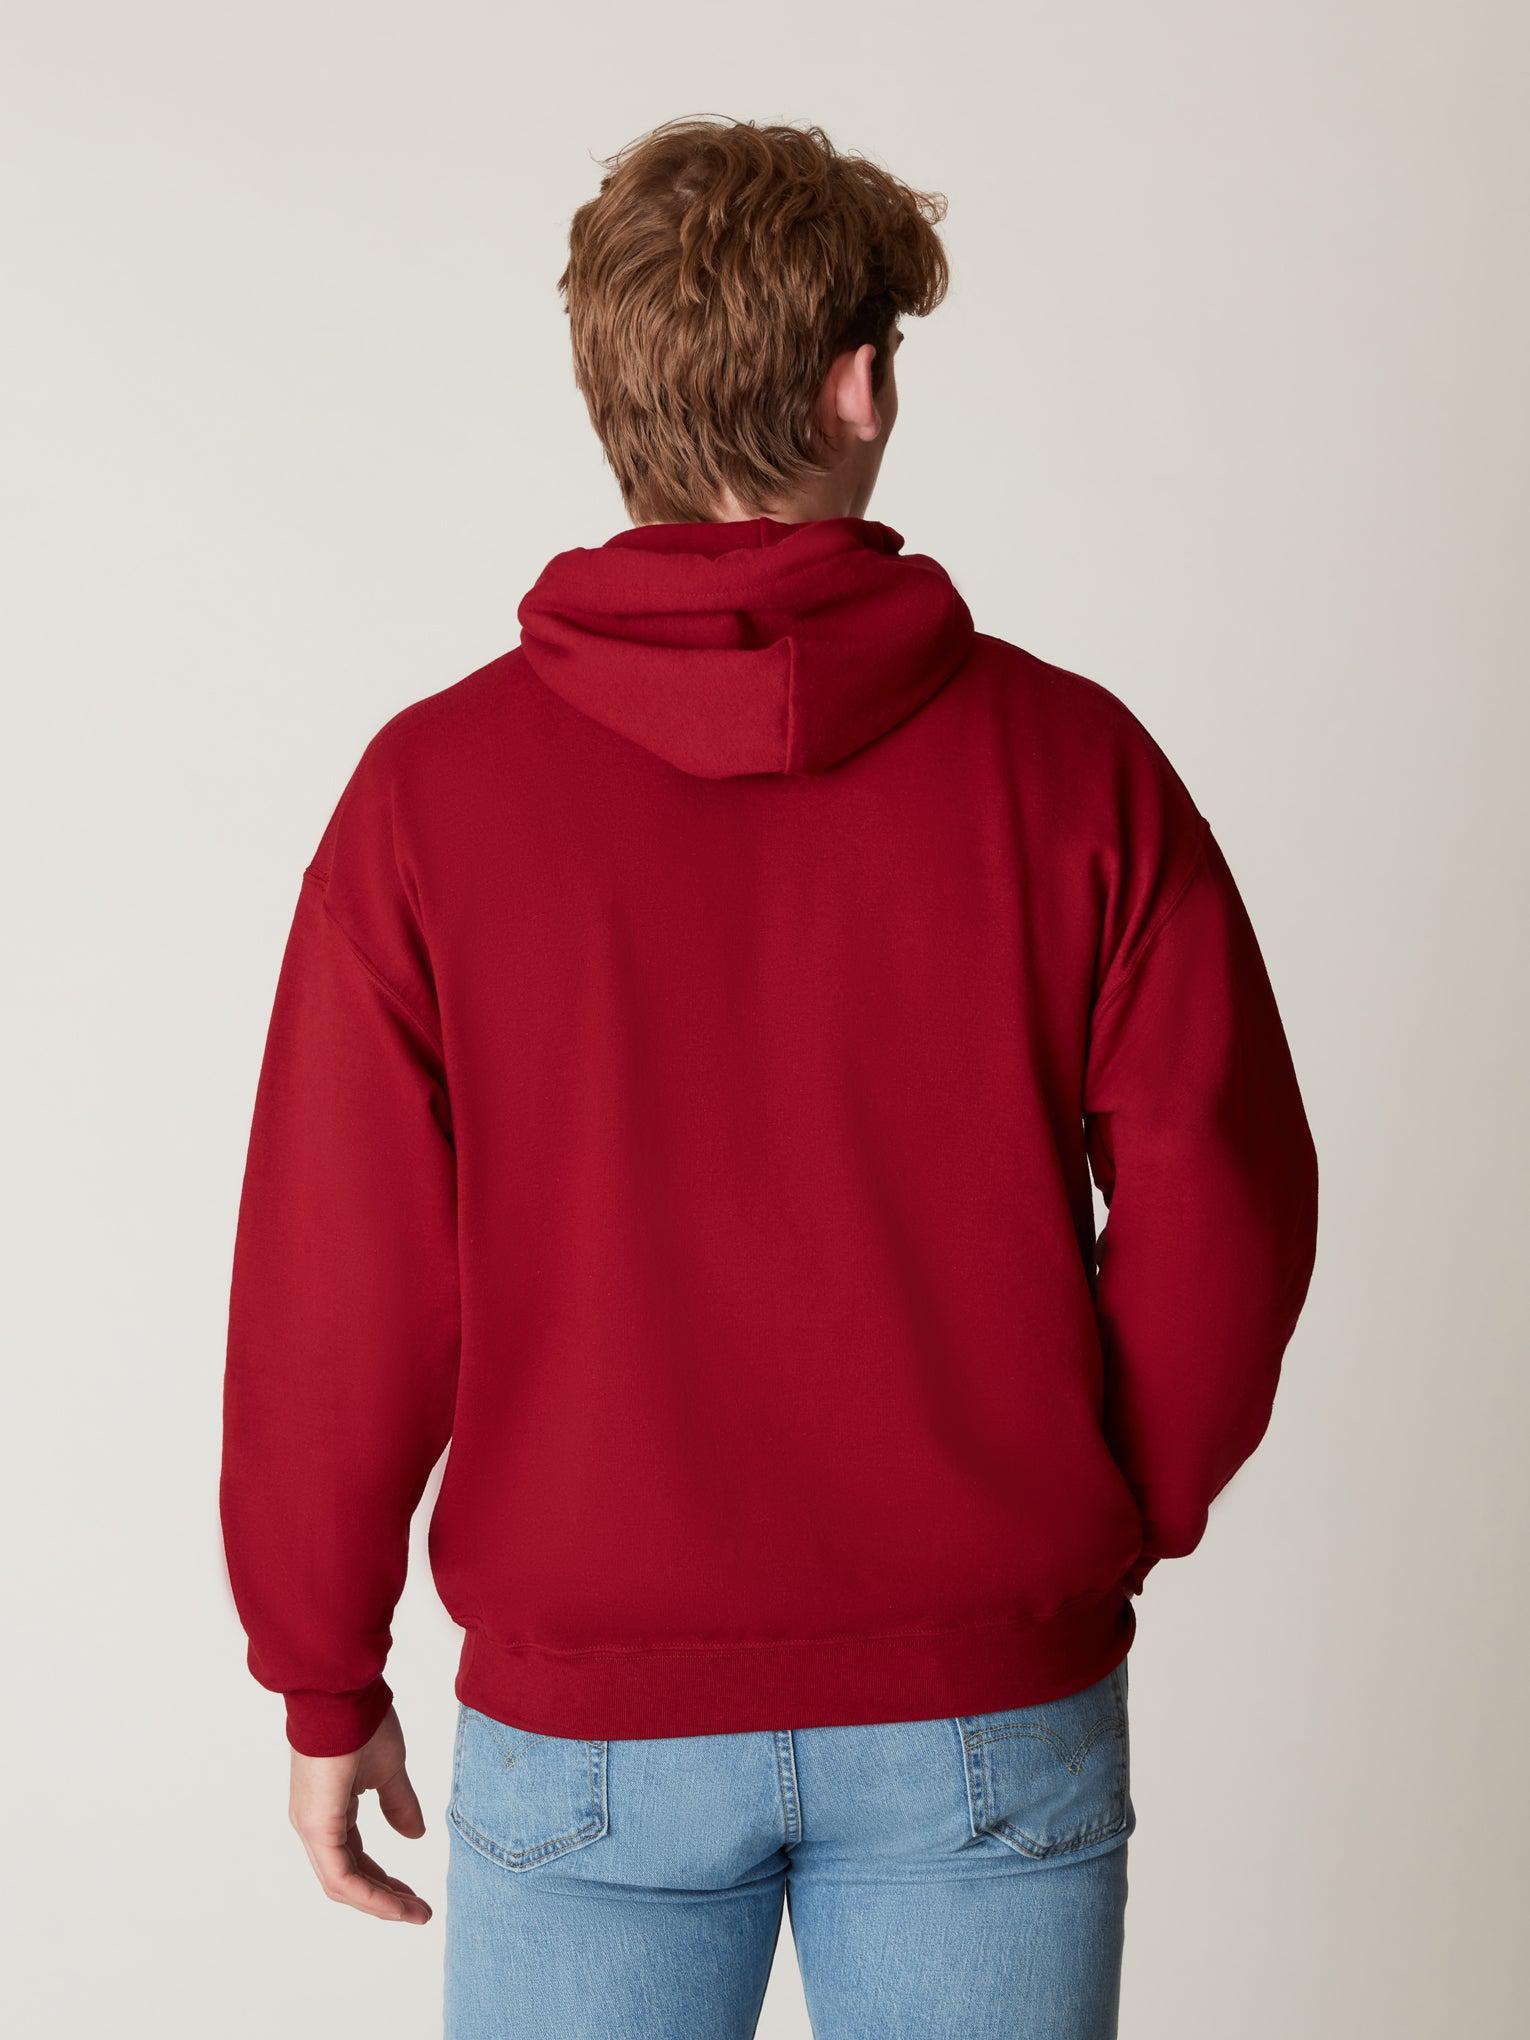 Shop Harvard Arc Sweatshirt Harvard The Hooded –